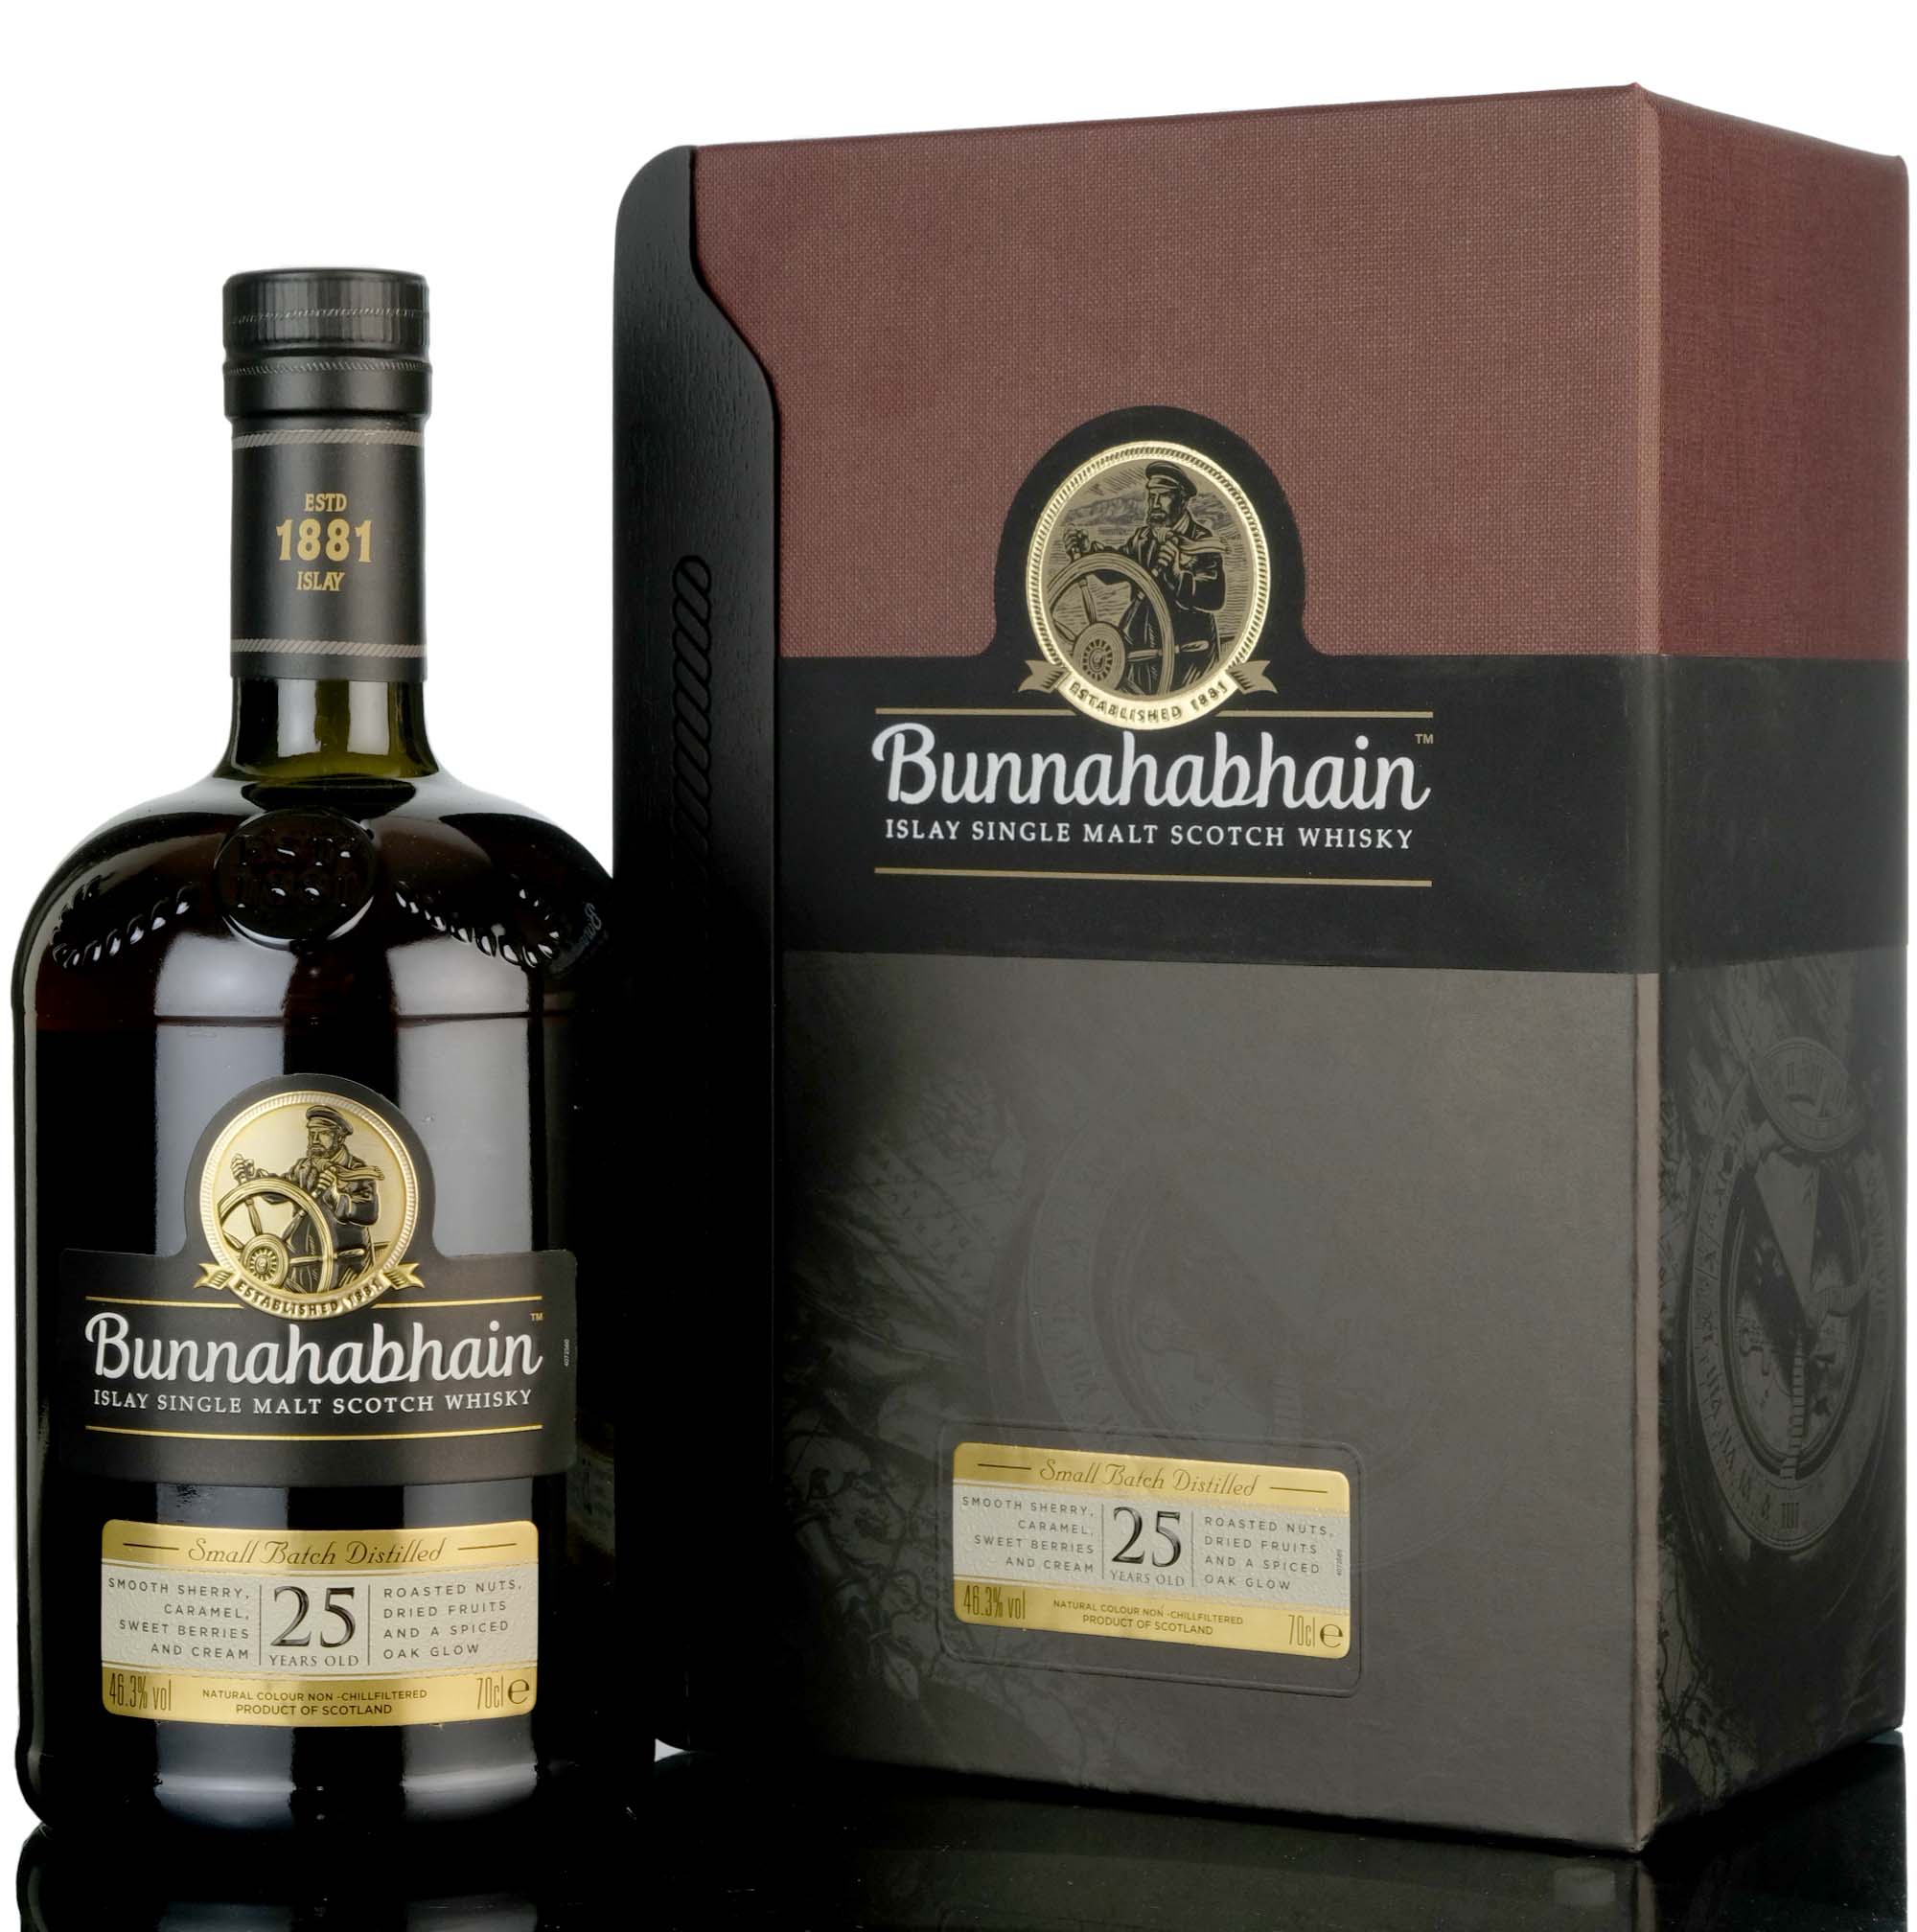 Bunnahabhain 25 Year Old - Small Batch Distilled